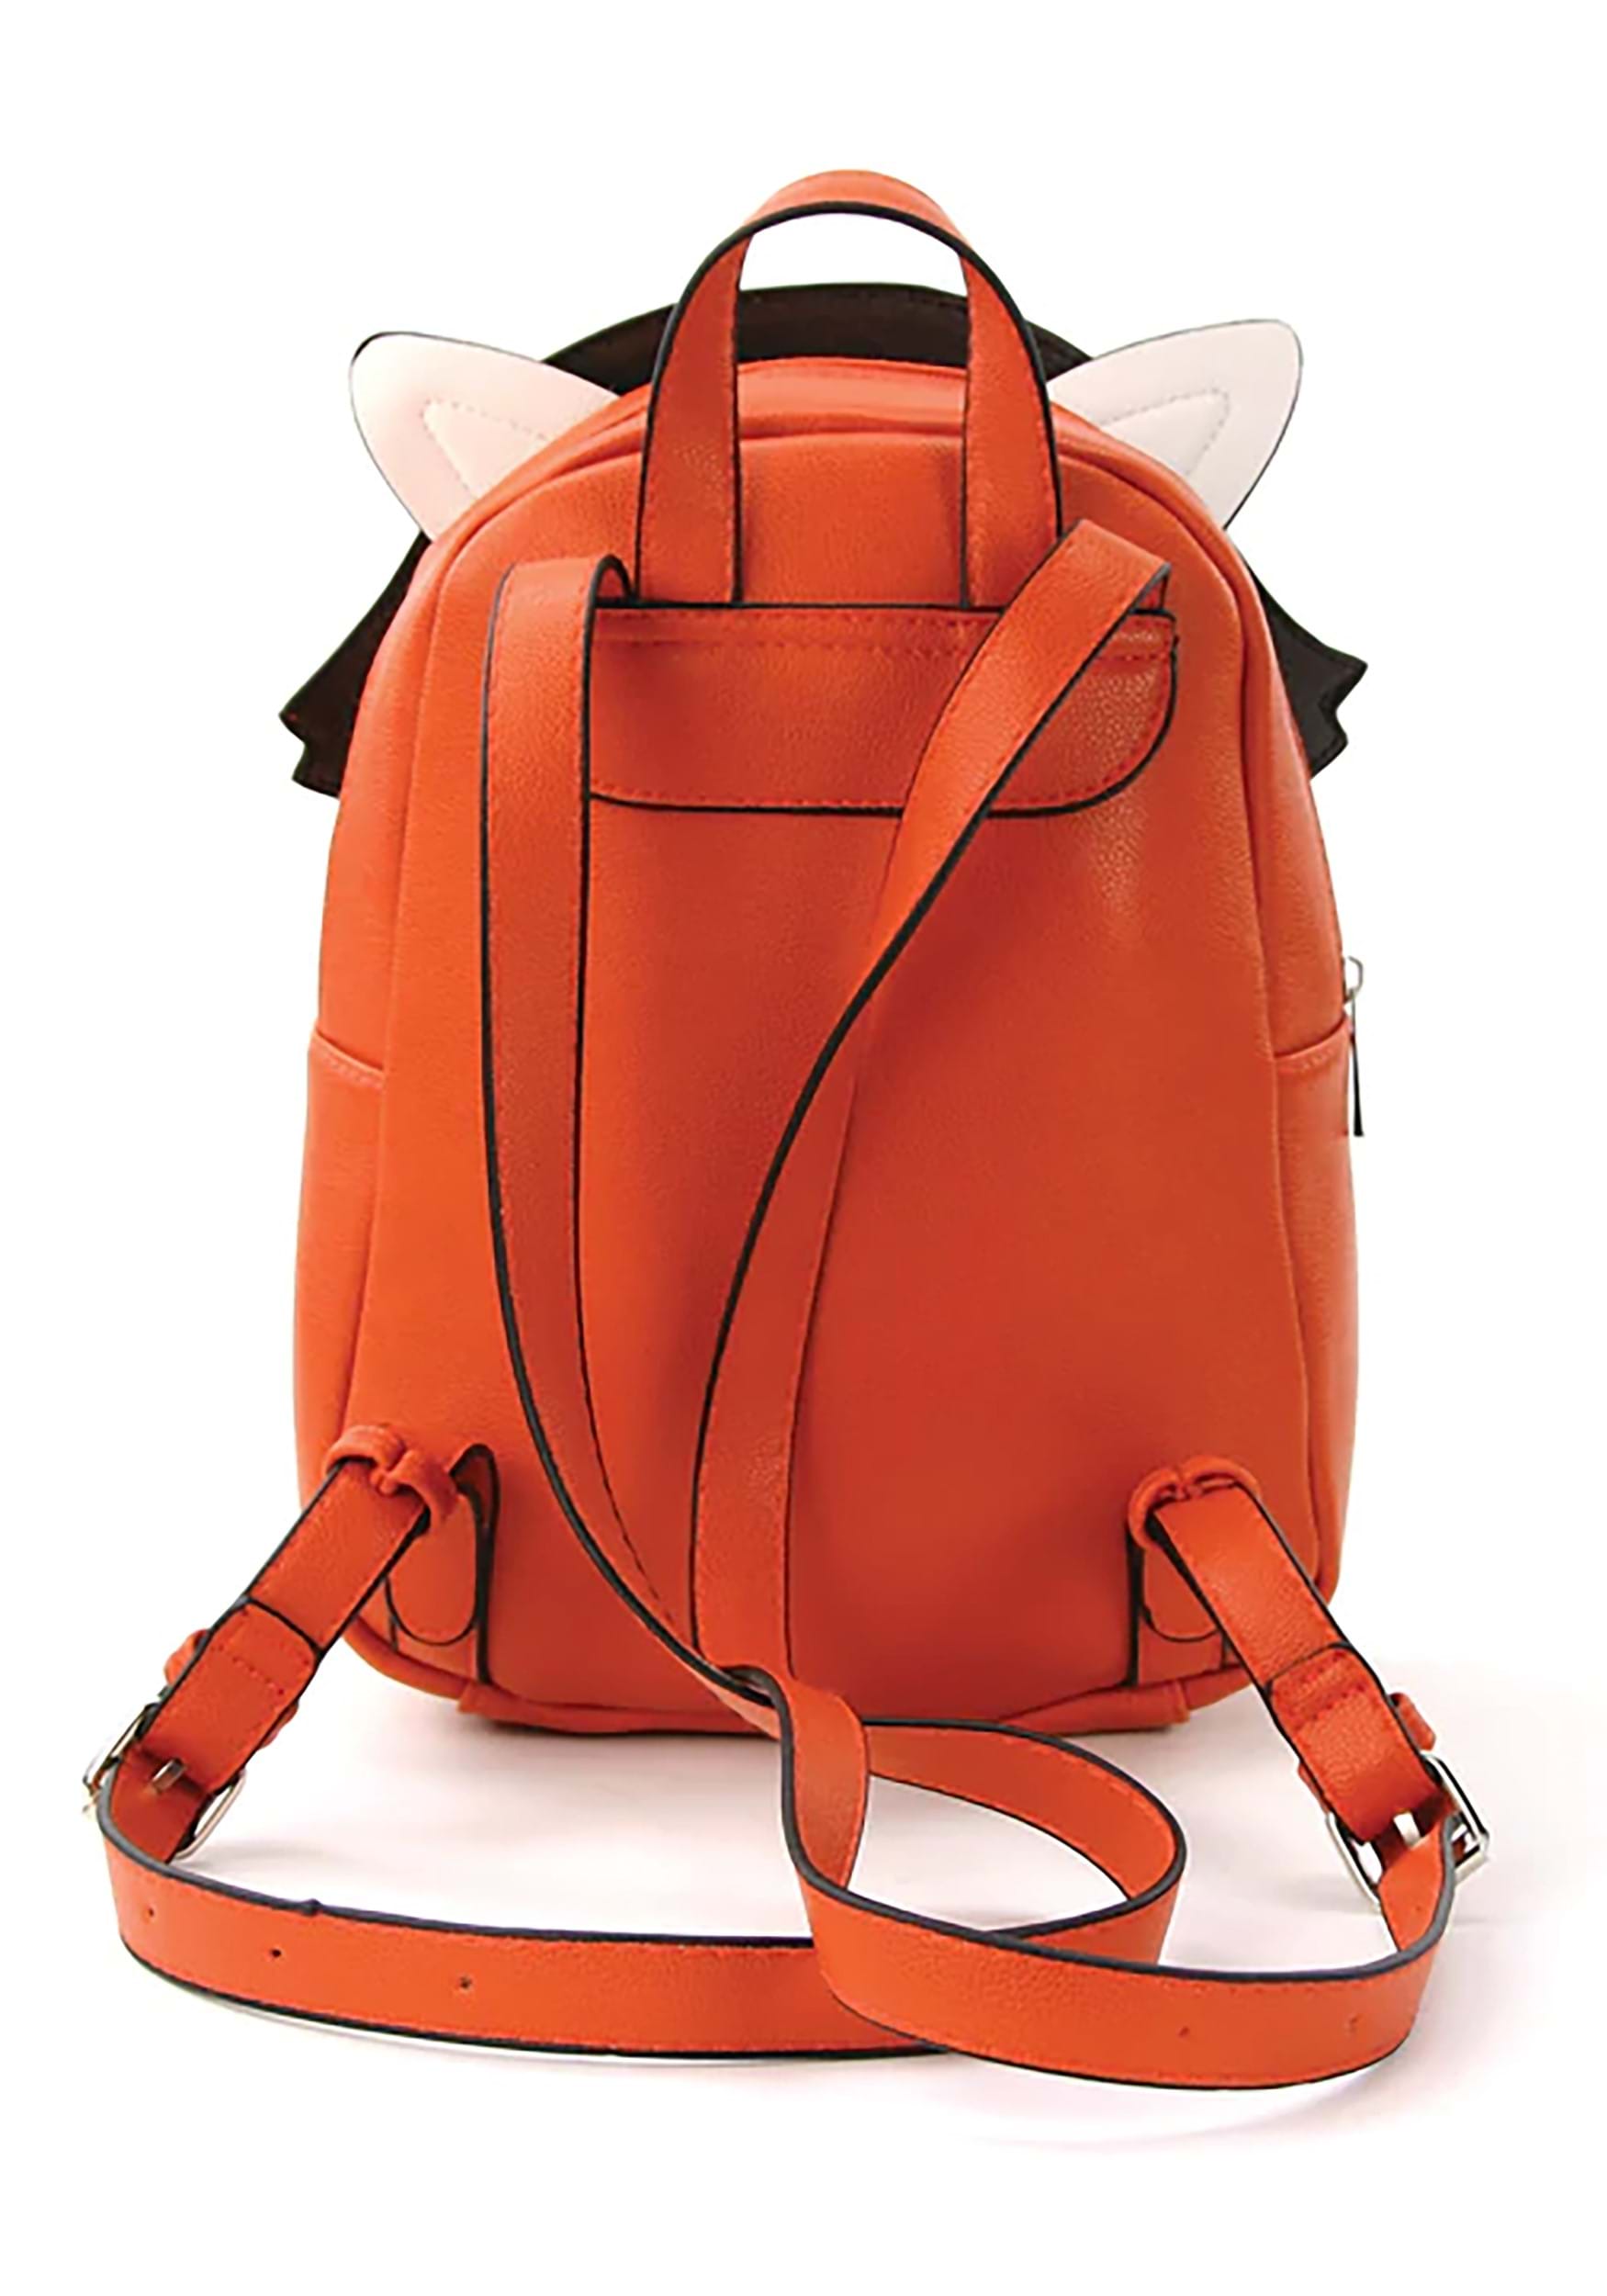 Minion Panda Backpack